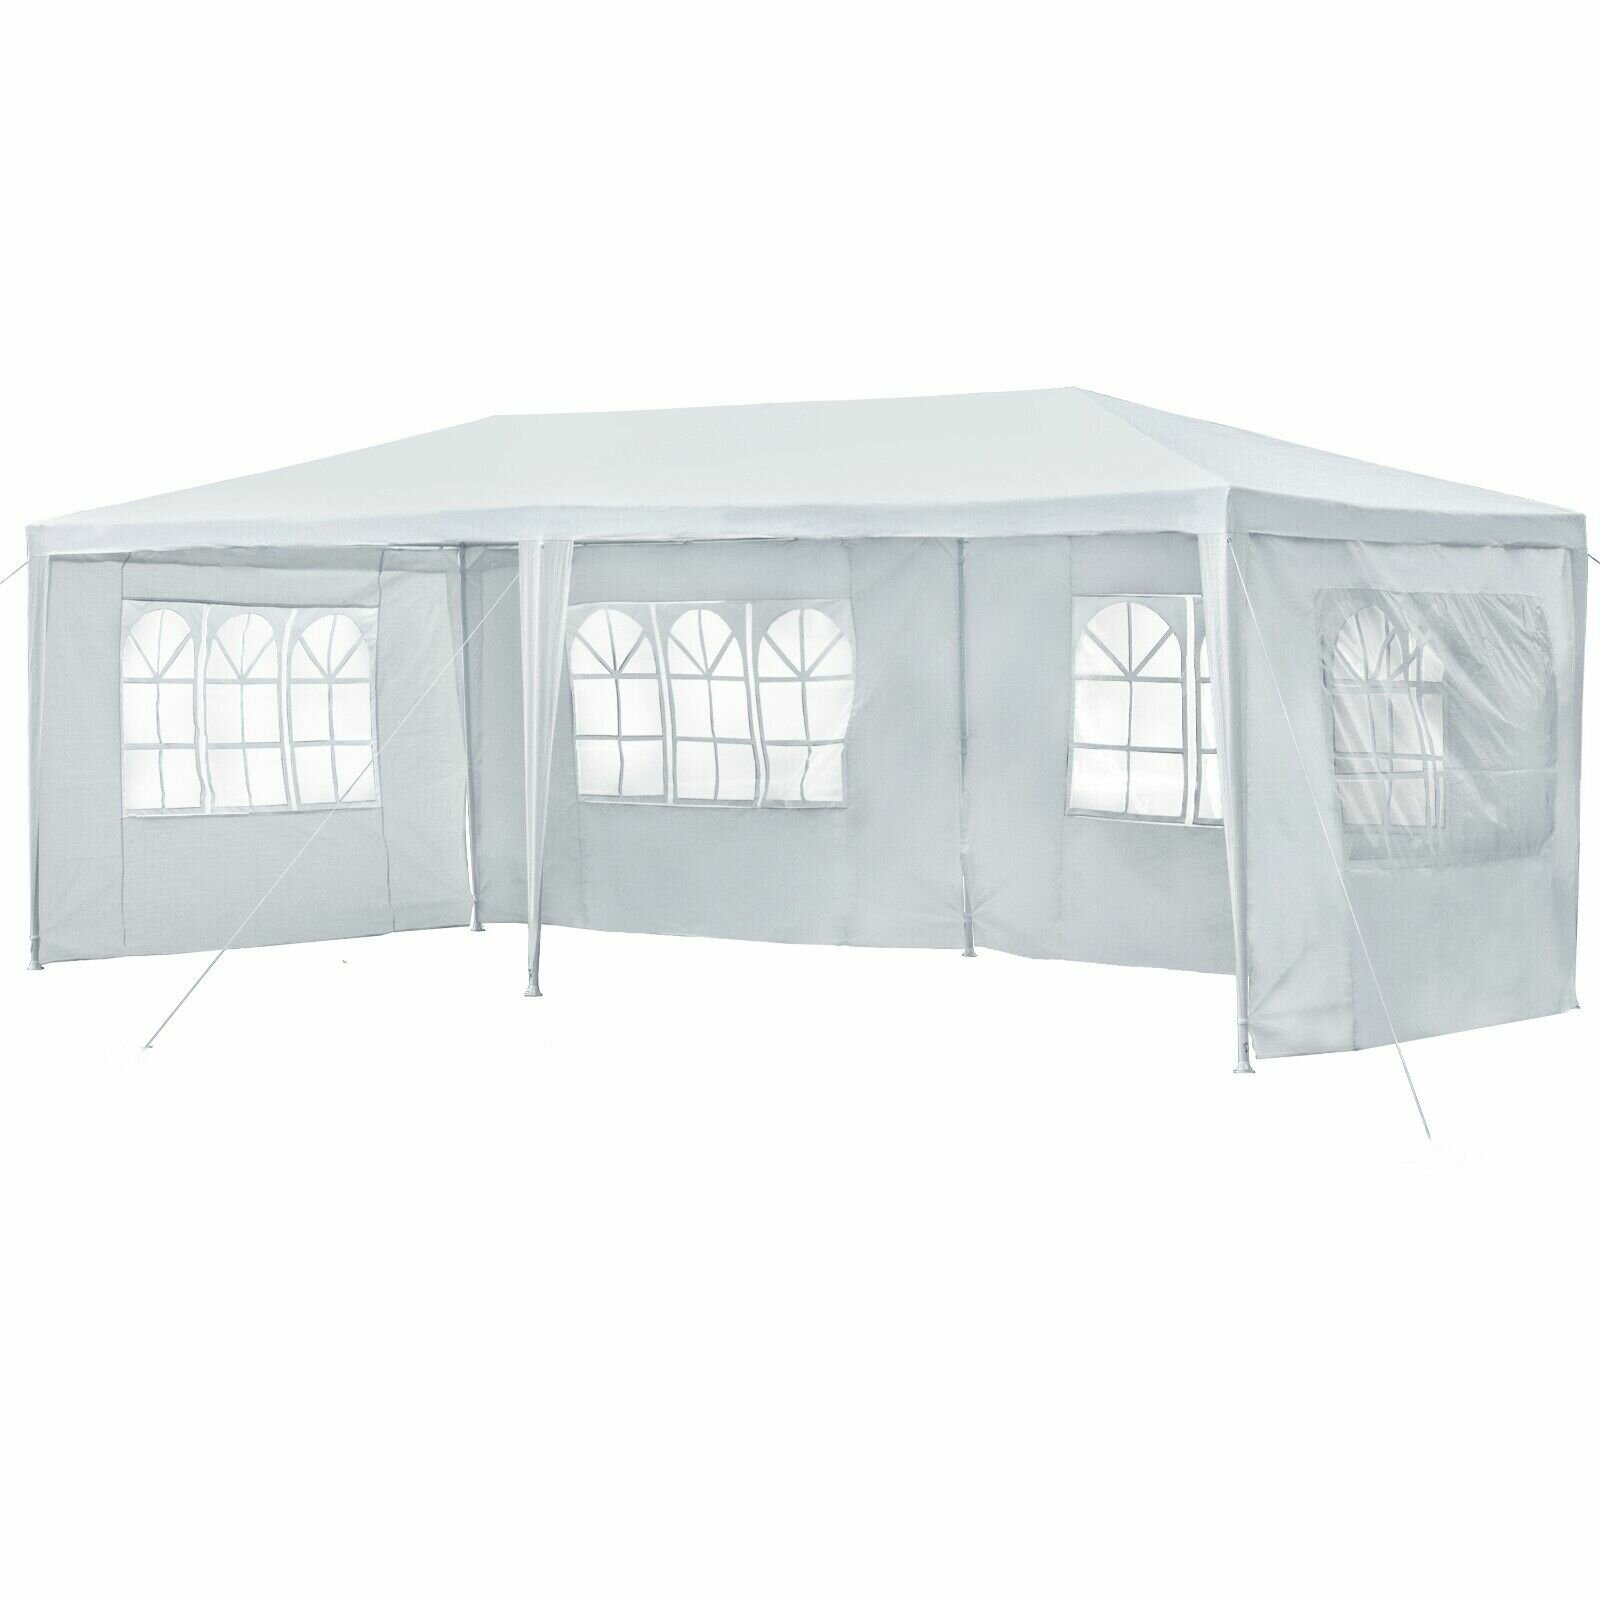 10x20ft Canopy oldalfala 210D vízálló Gazebo Shelter Shade ablakokkal kültéri könnyű parti sátor nélkül a tetején.